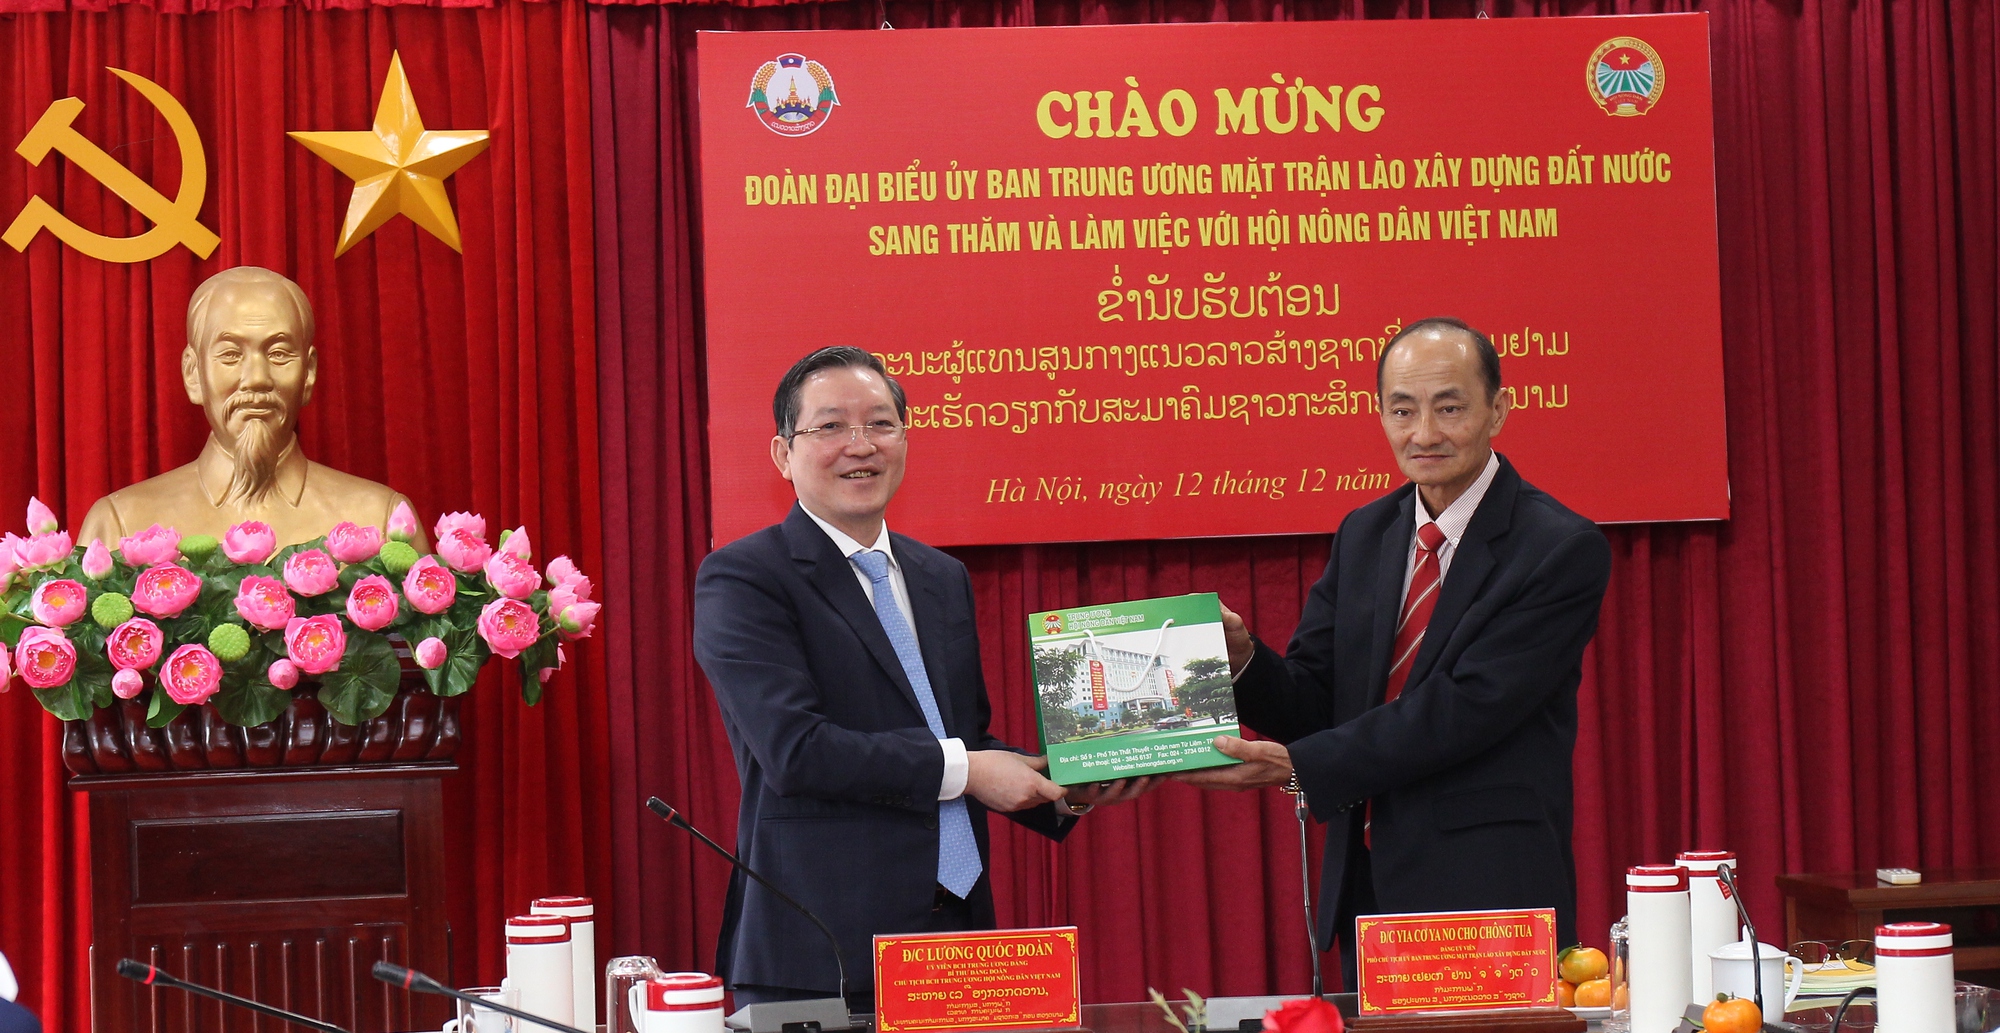 Chủ tịch Hội NDVN Lương Quốc Đoàn trao đổi kinh nghiệm công tác Hội với T.Ư Mặt trận Lào xây dựng đất nước- Ảnh 3.